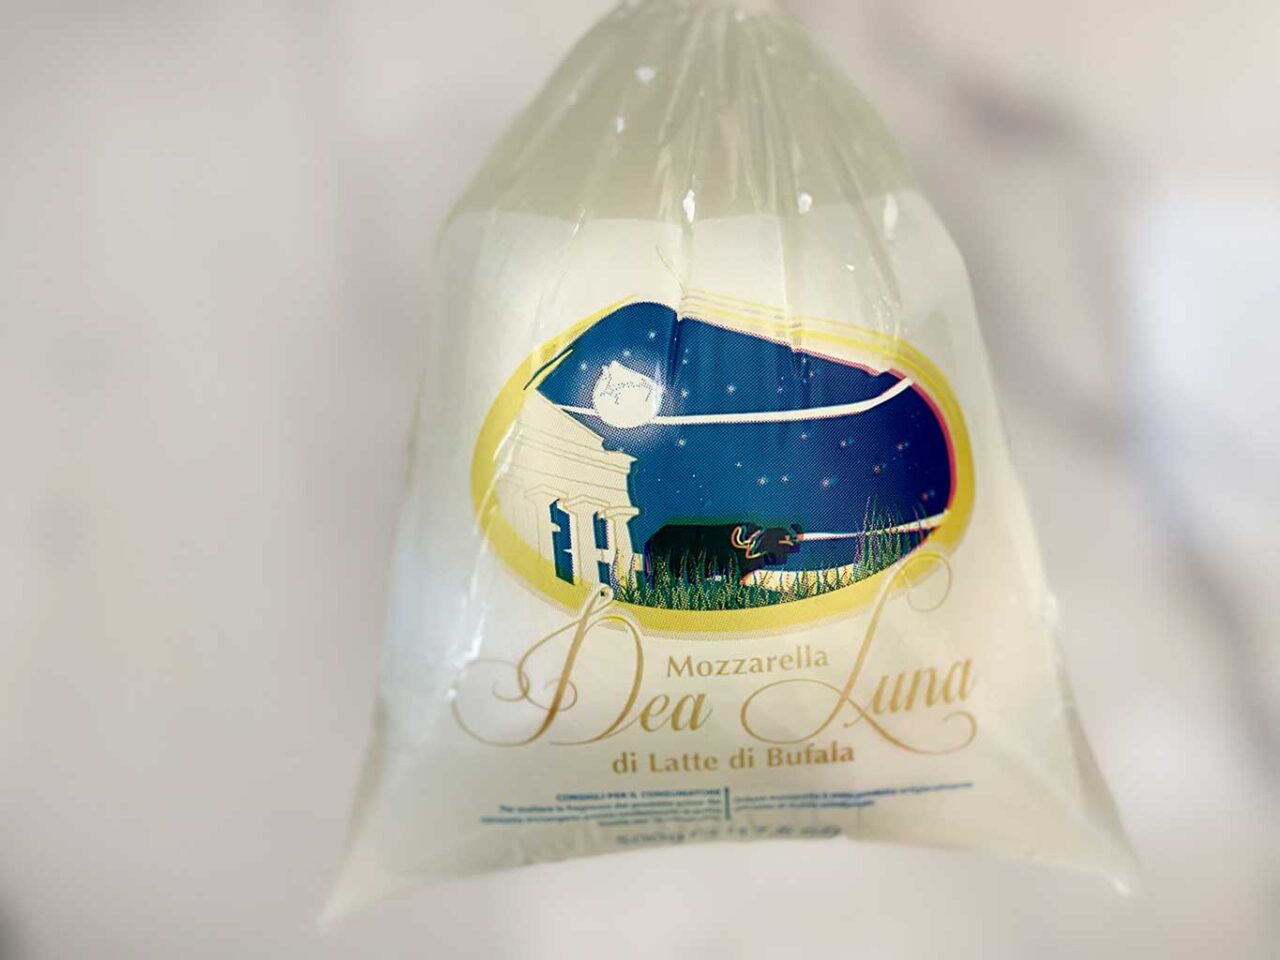 Dea Luna vince agli ottavi del Campionato della Mozzarella di Bufala 2023